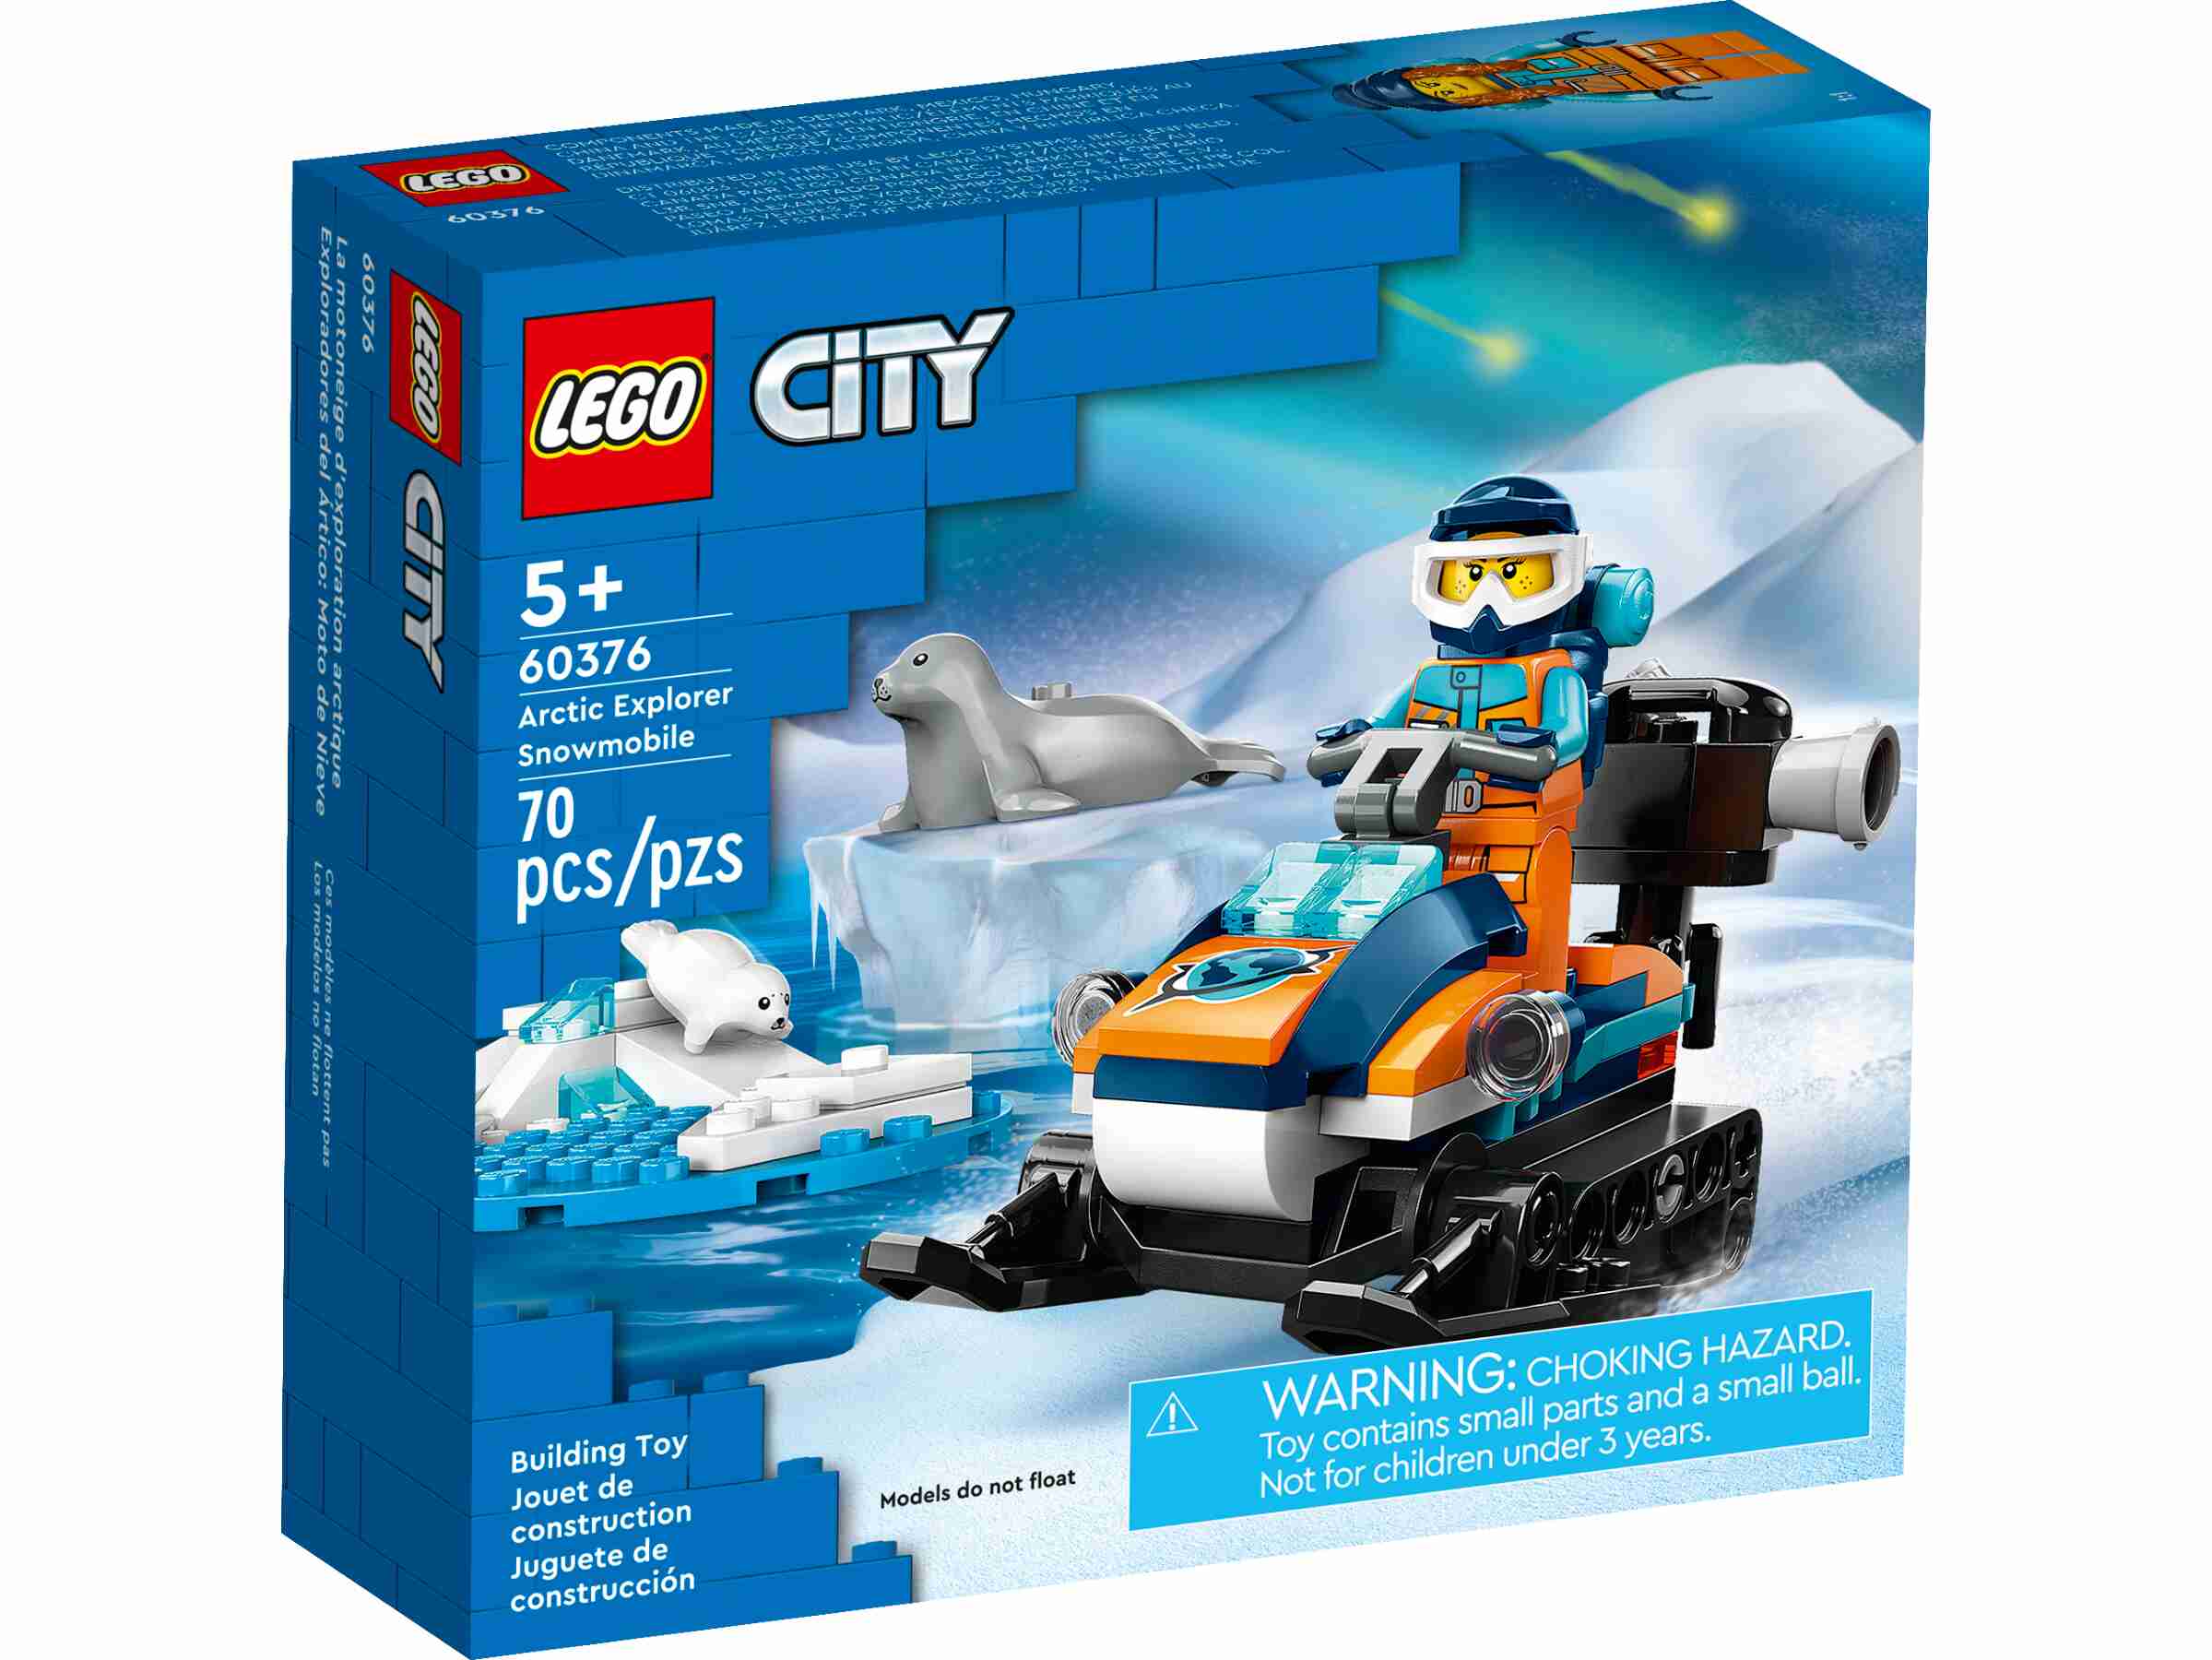 LEGO 60376 City Arktis-Schneemobil, Minifigur, Robbe und Robbenjunges